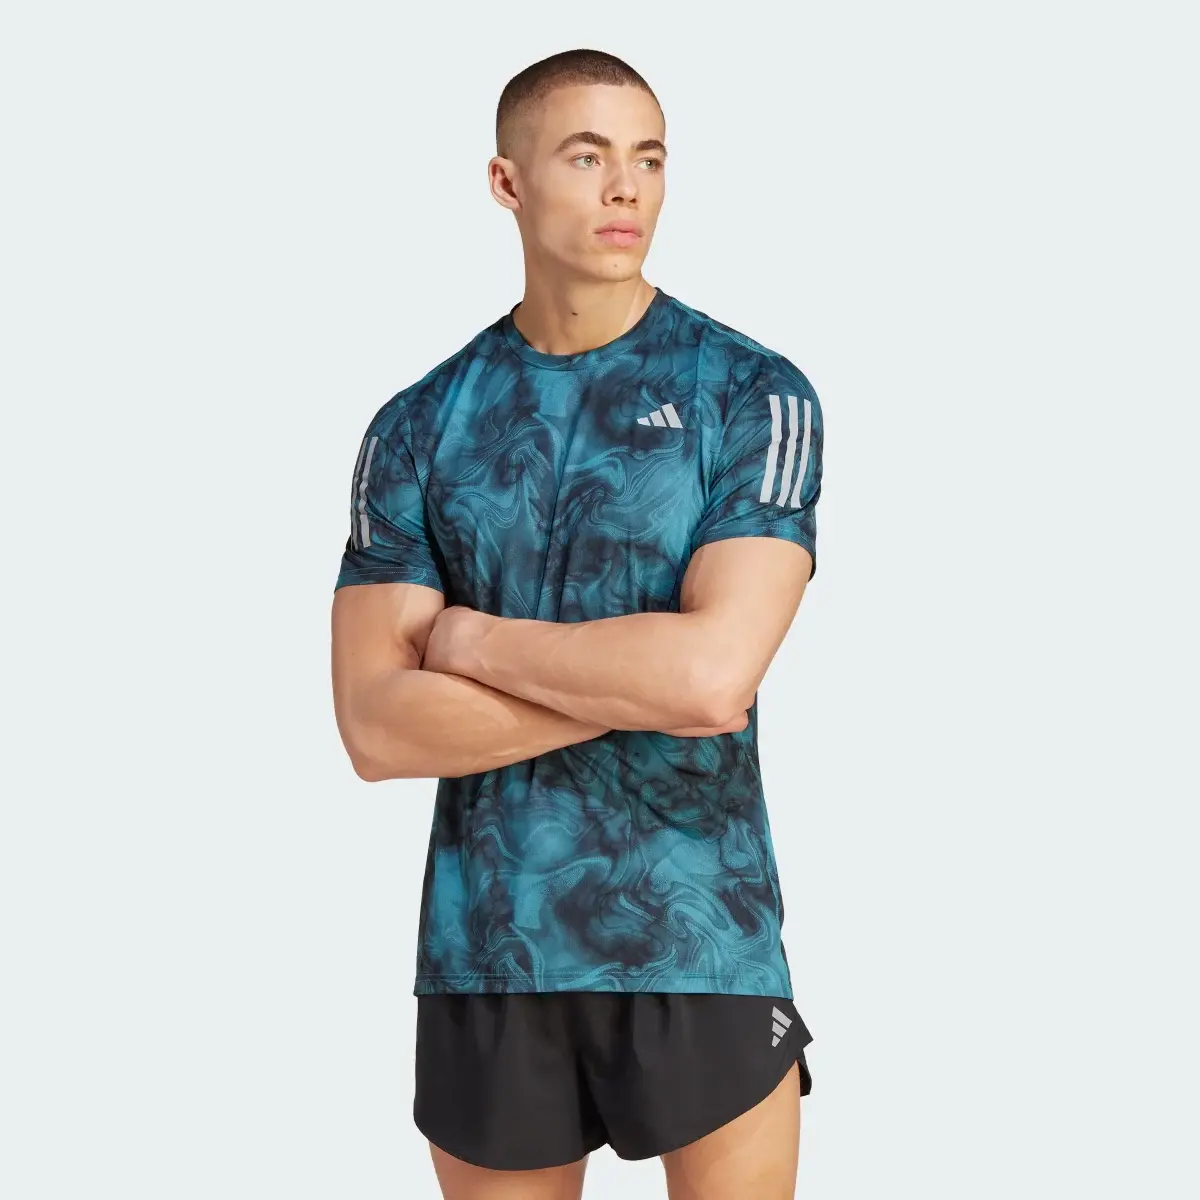 Adidas Own the Run Allover Print T-Shirt. 2